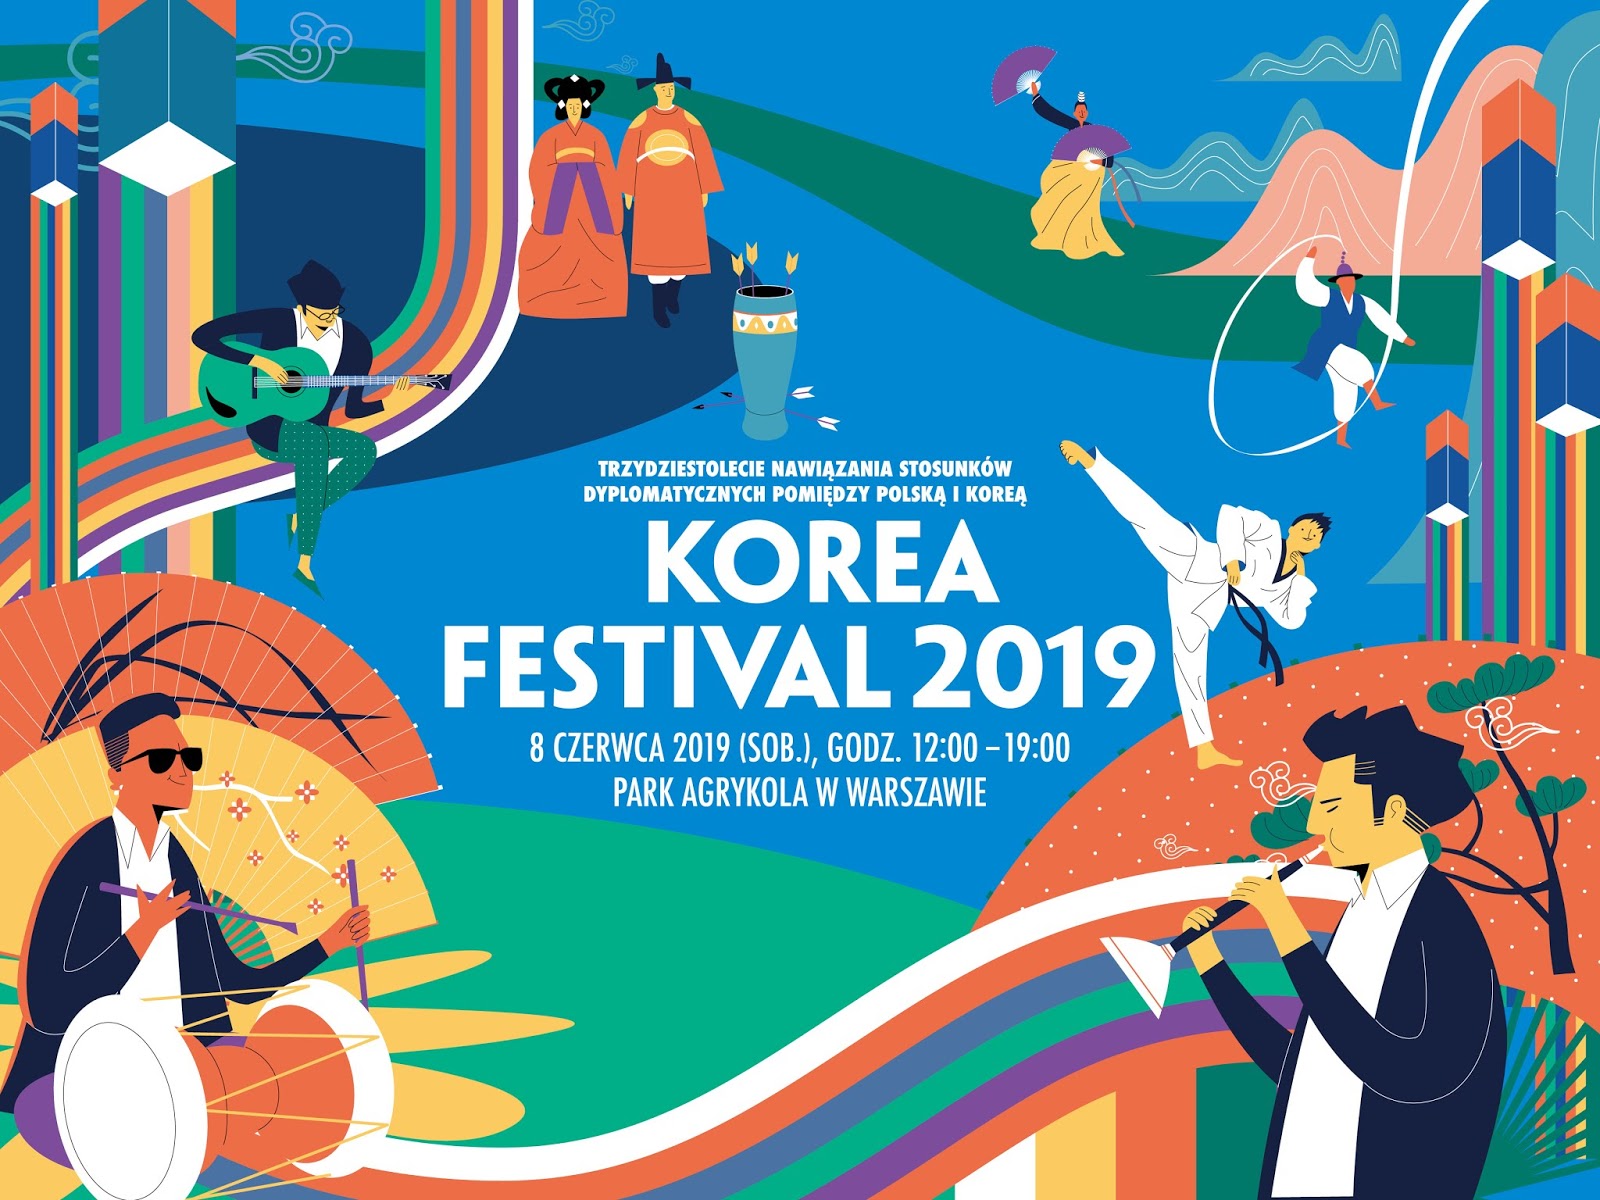 Korea Festival ponownie w Warszawie